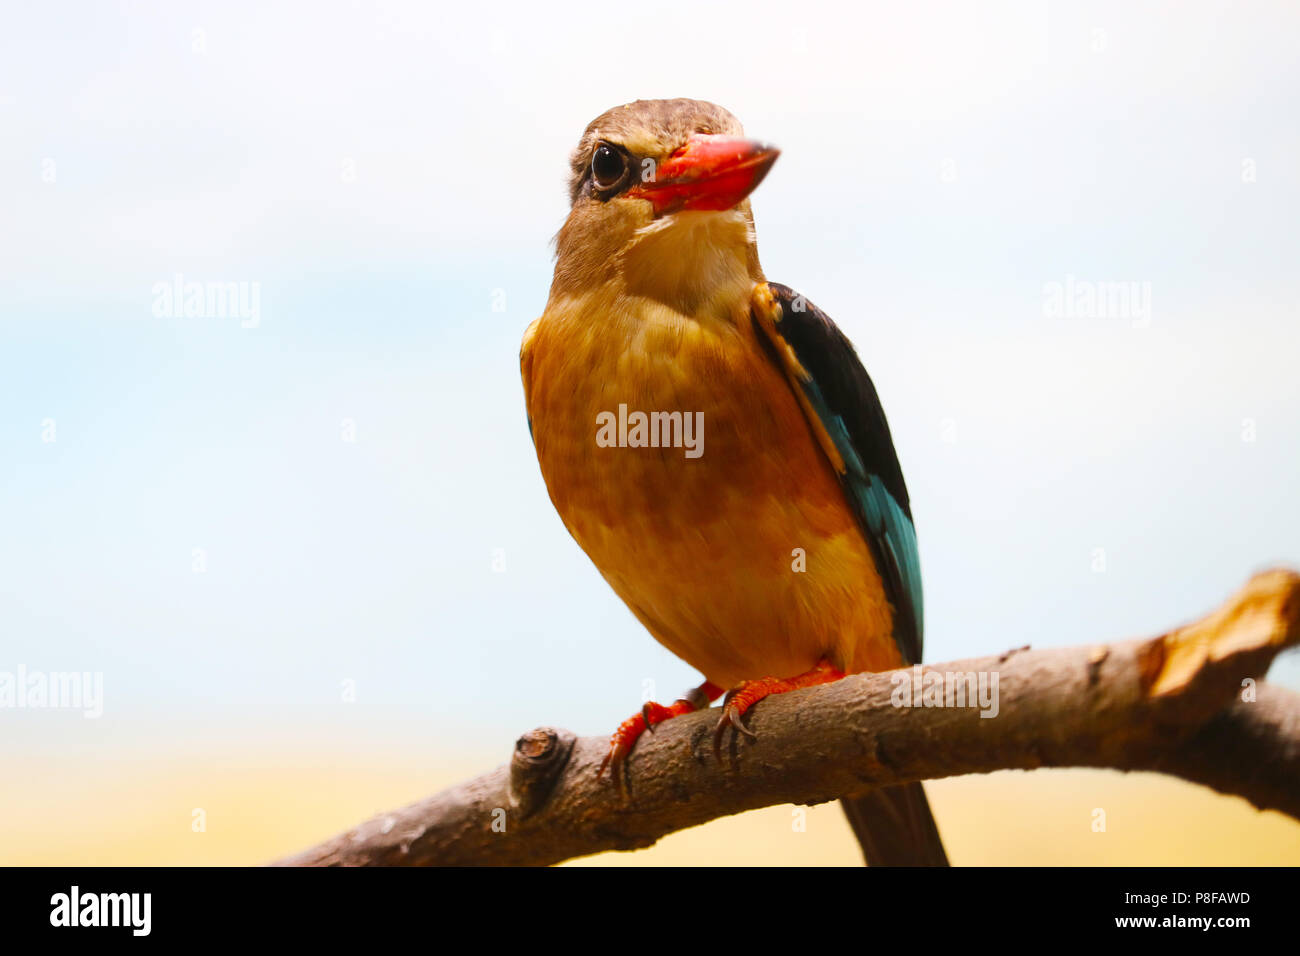 Marrone-incappucciati kingfisher (halcyon albiventris) con un lungo becco rosso seduto su un ramo Foto Stock